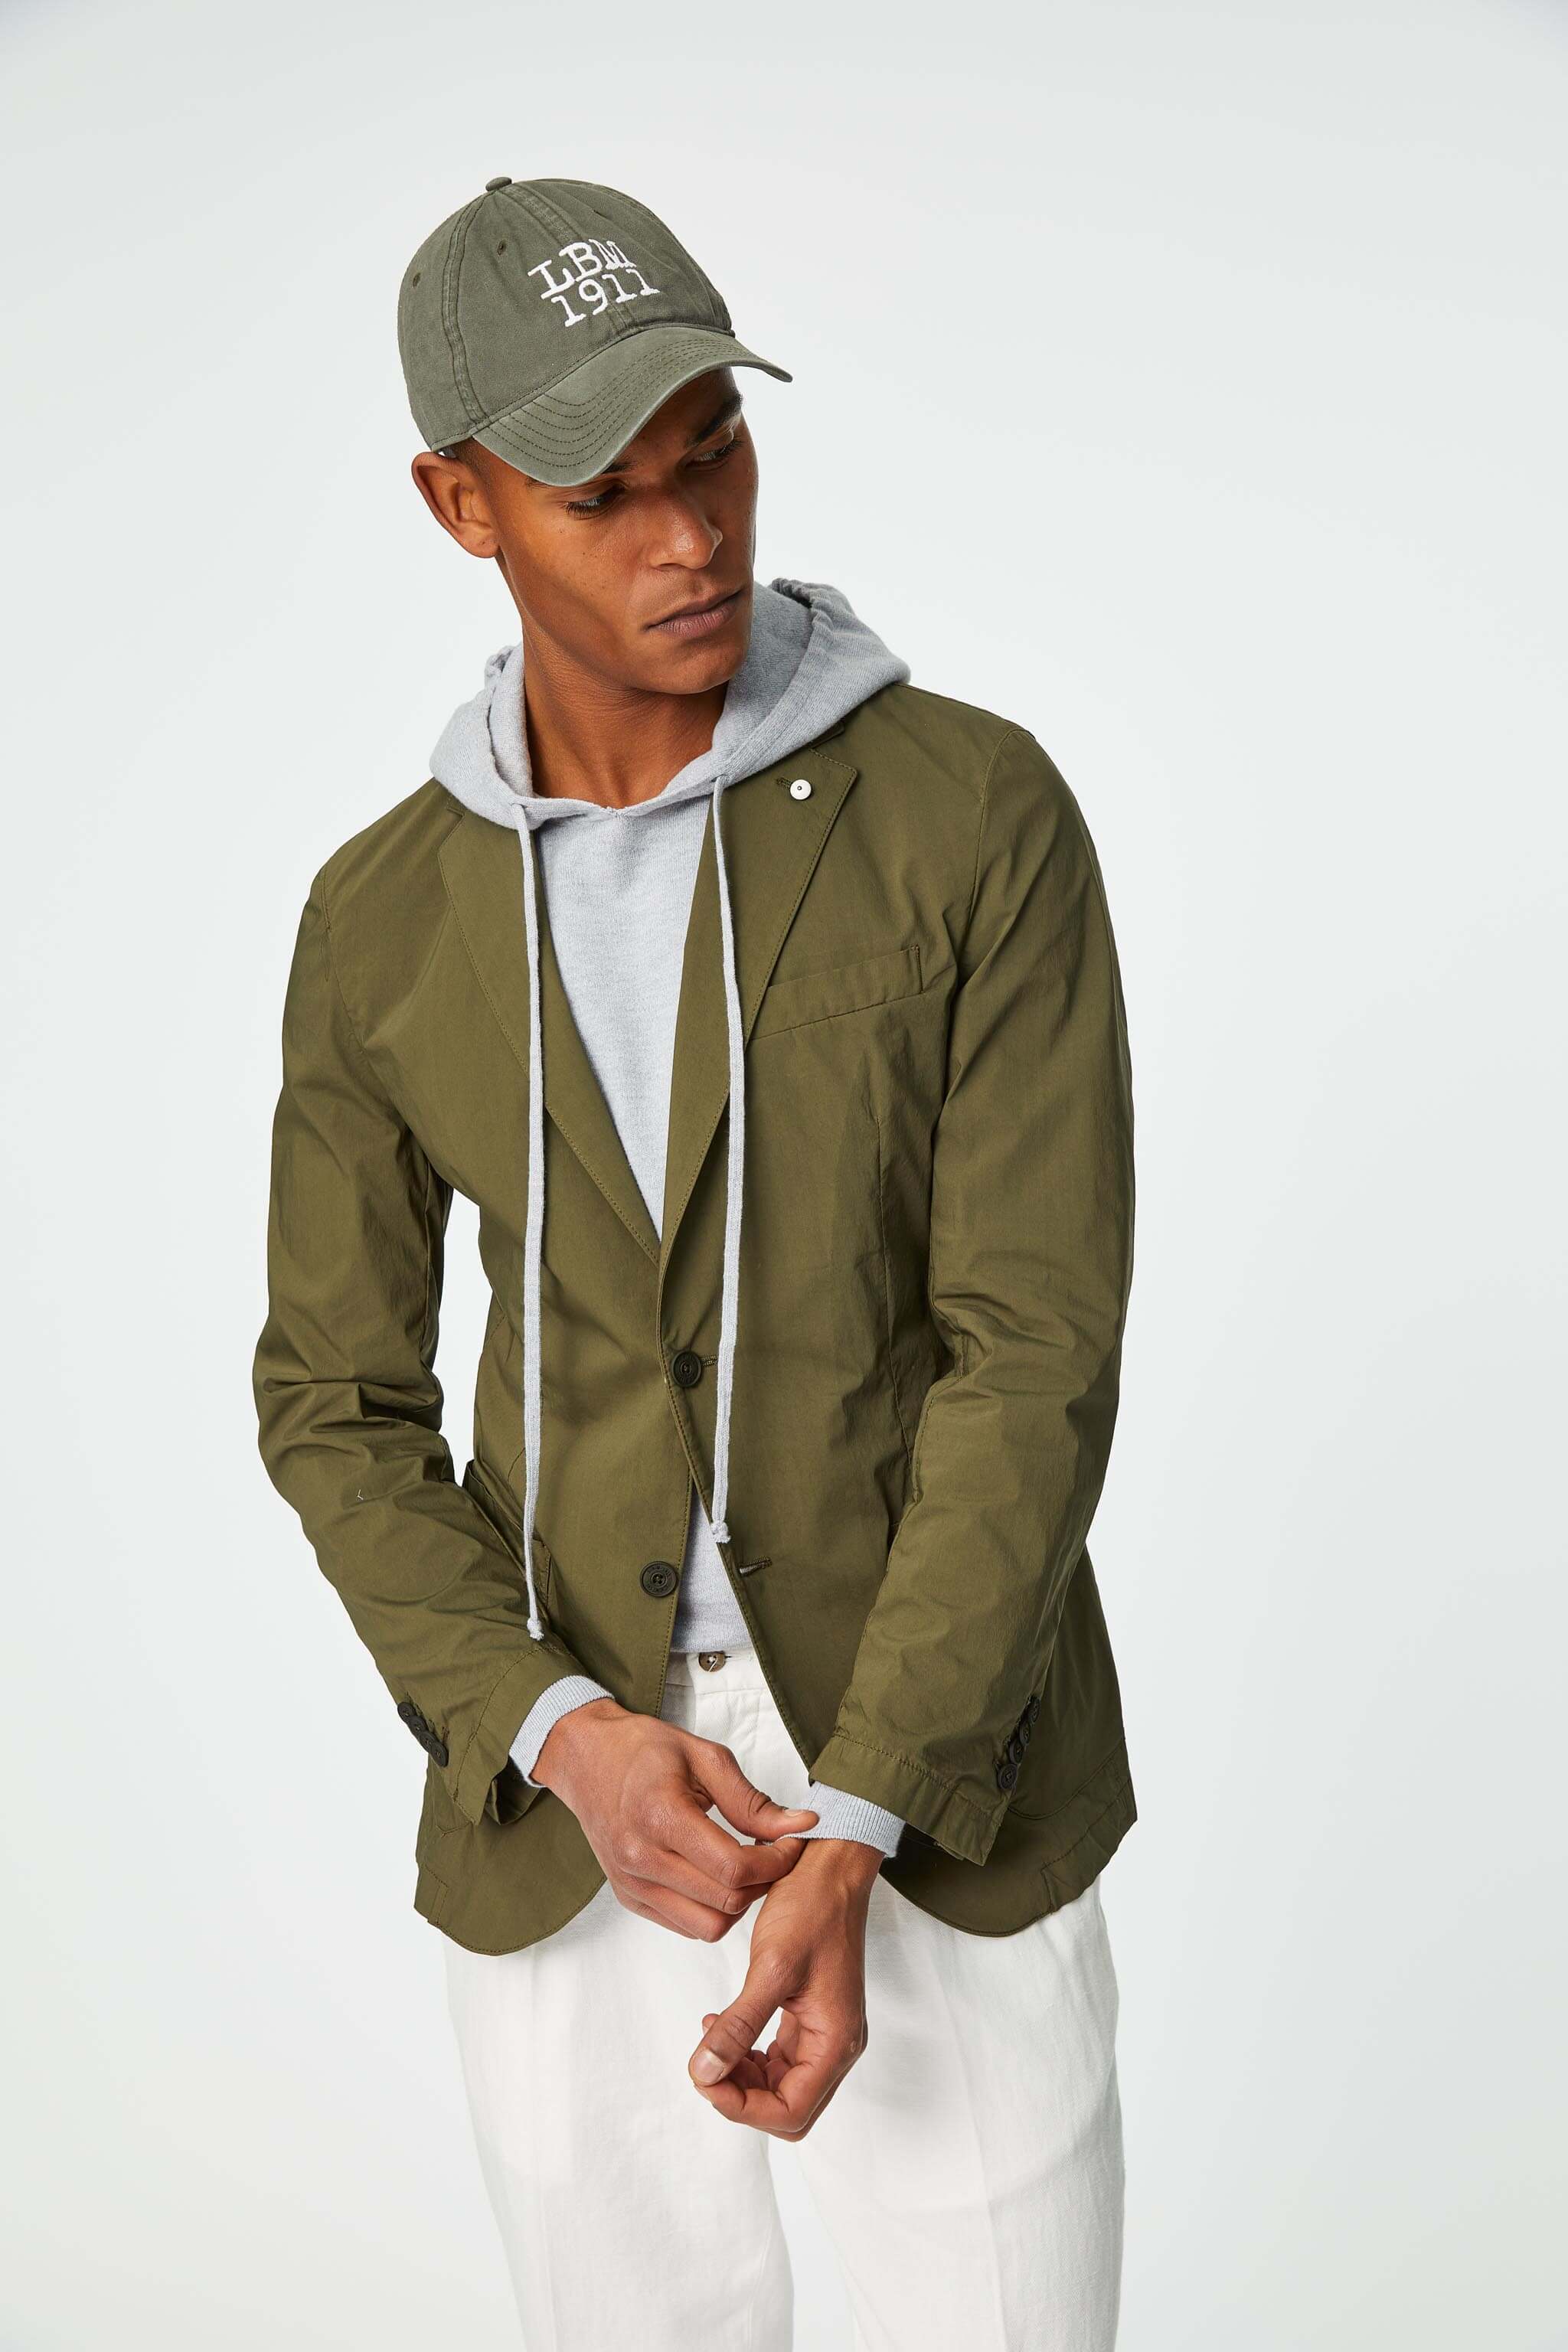 Garment-dyed EDDY jacket in army green